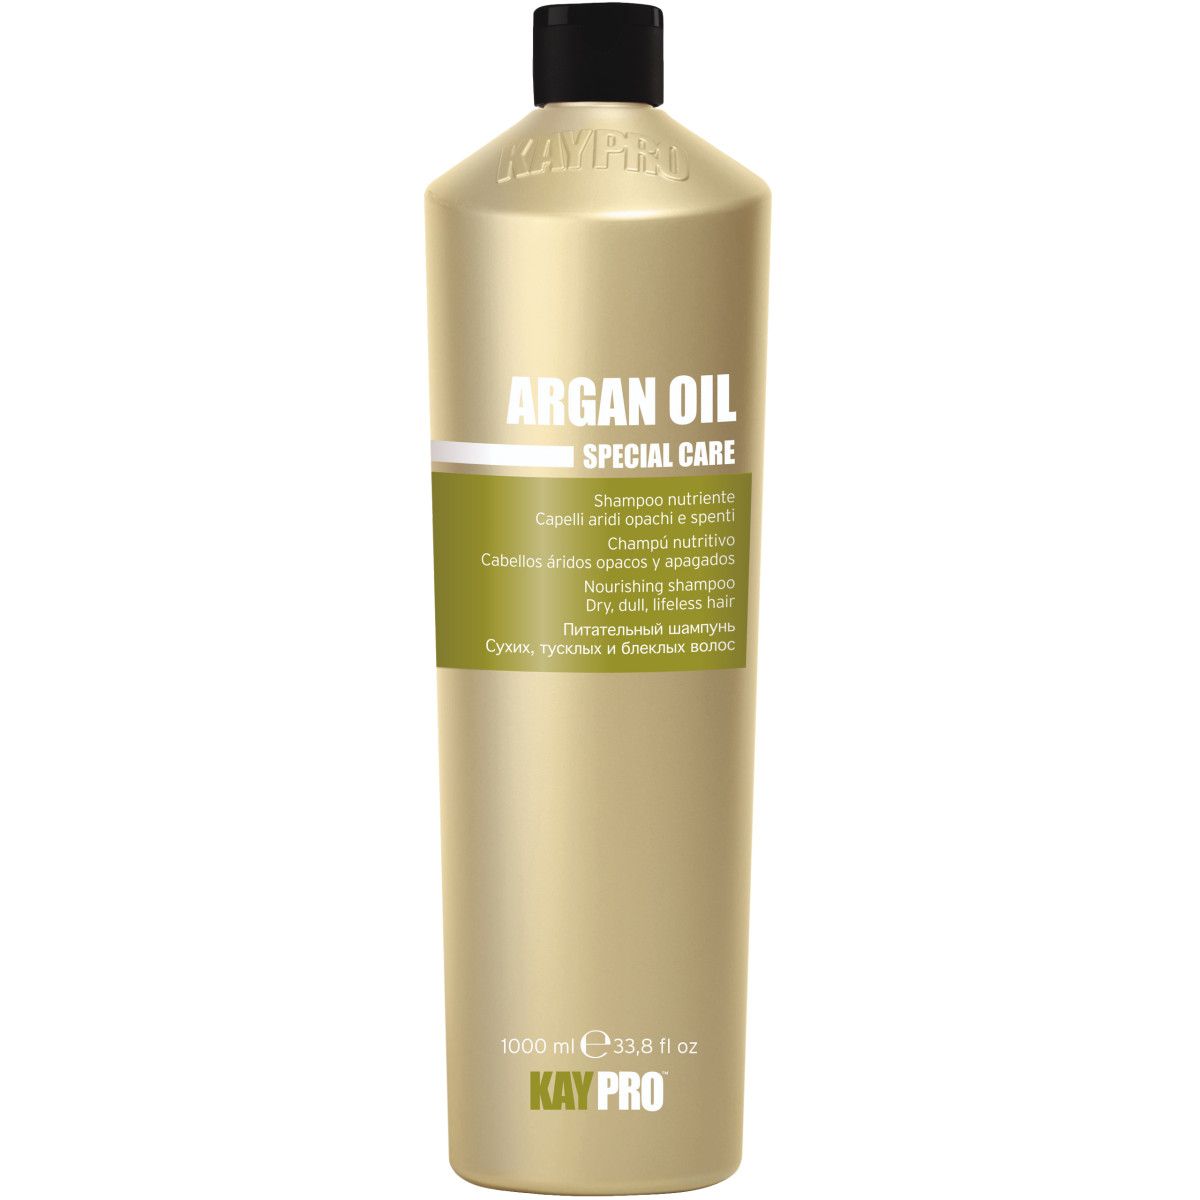 KayPro Argan Oil Special Care - odżywczy szampon do włosów, 1000ml